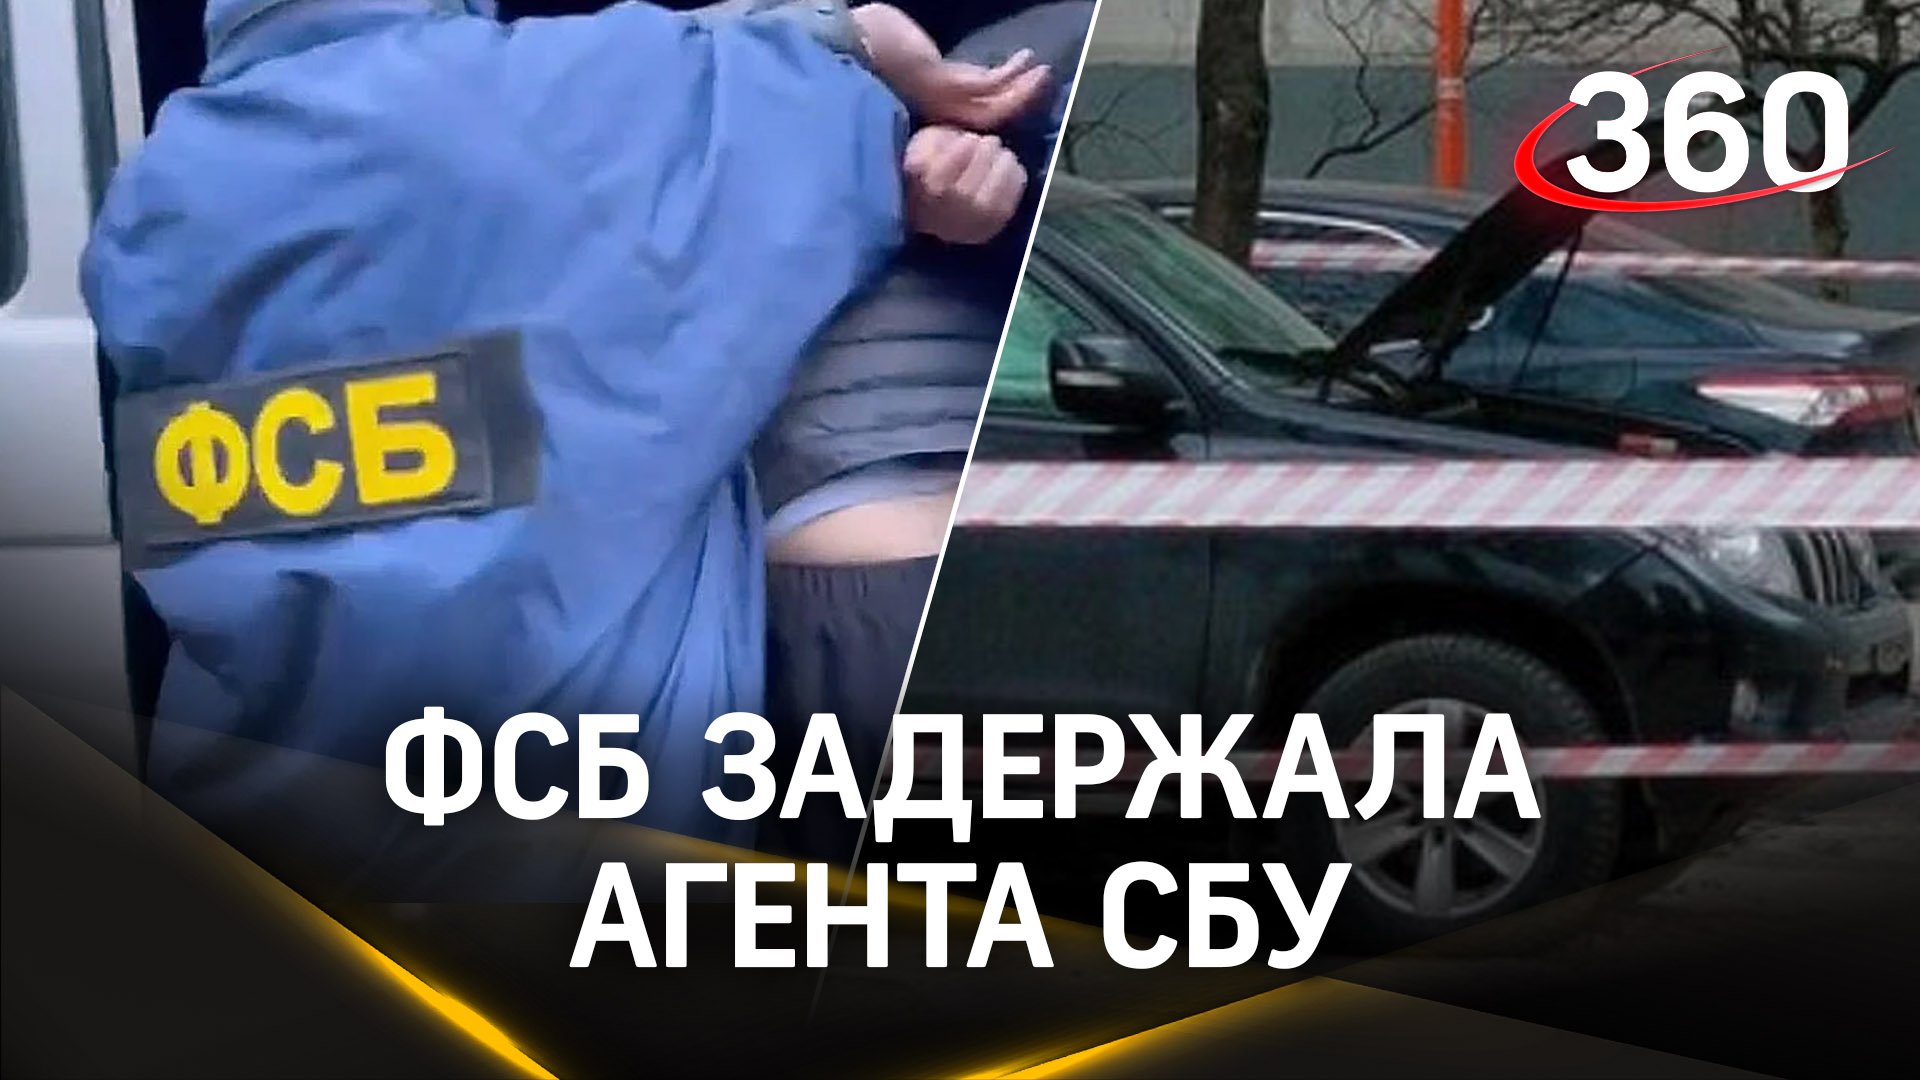 ФСБ задержала украинского агента - он подорвал авто экс-сотрудника СБУ в Москве. Кадры операции